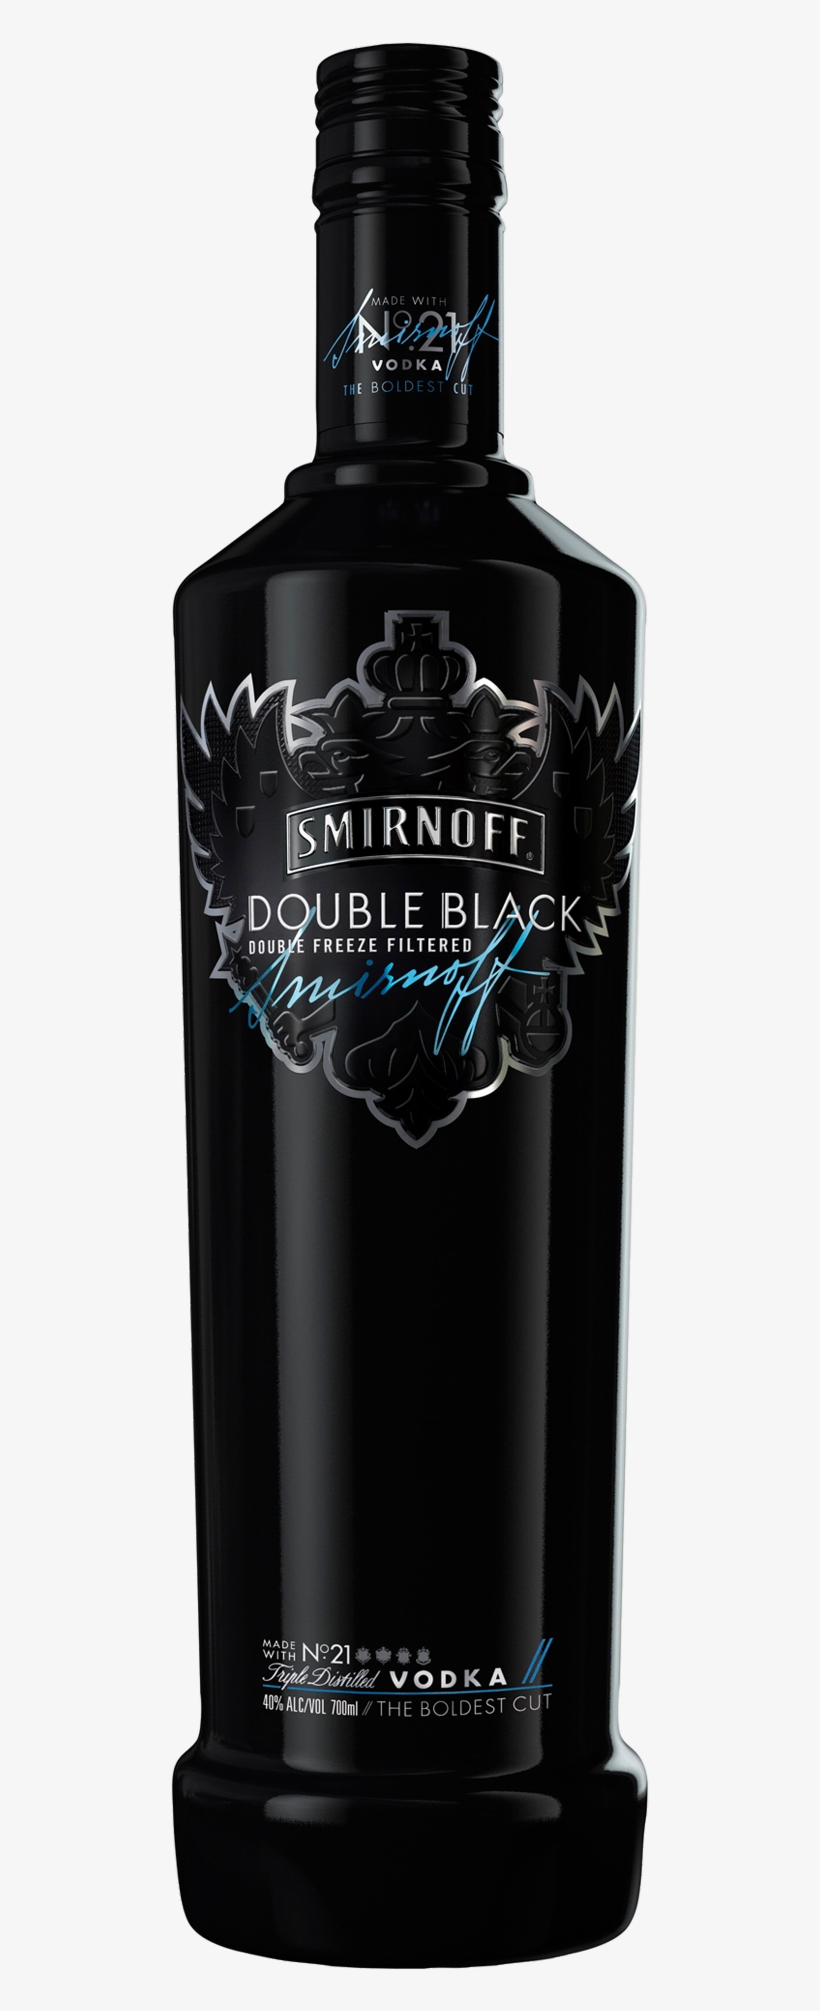 Double Black Vodka 700ml - Double Black Vodka, transparent png #2893486